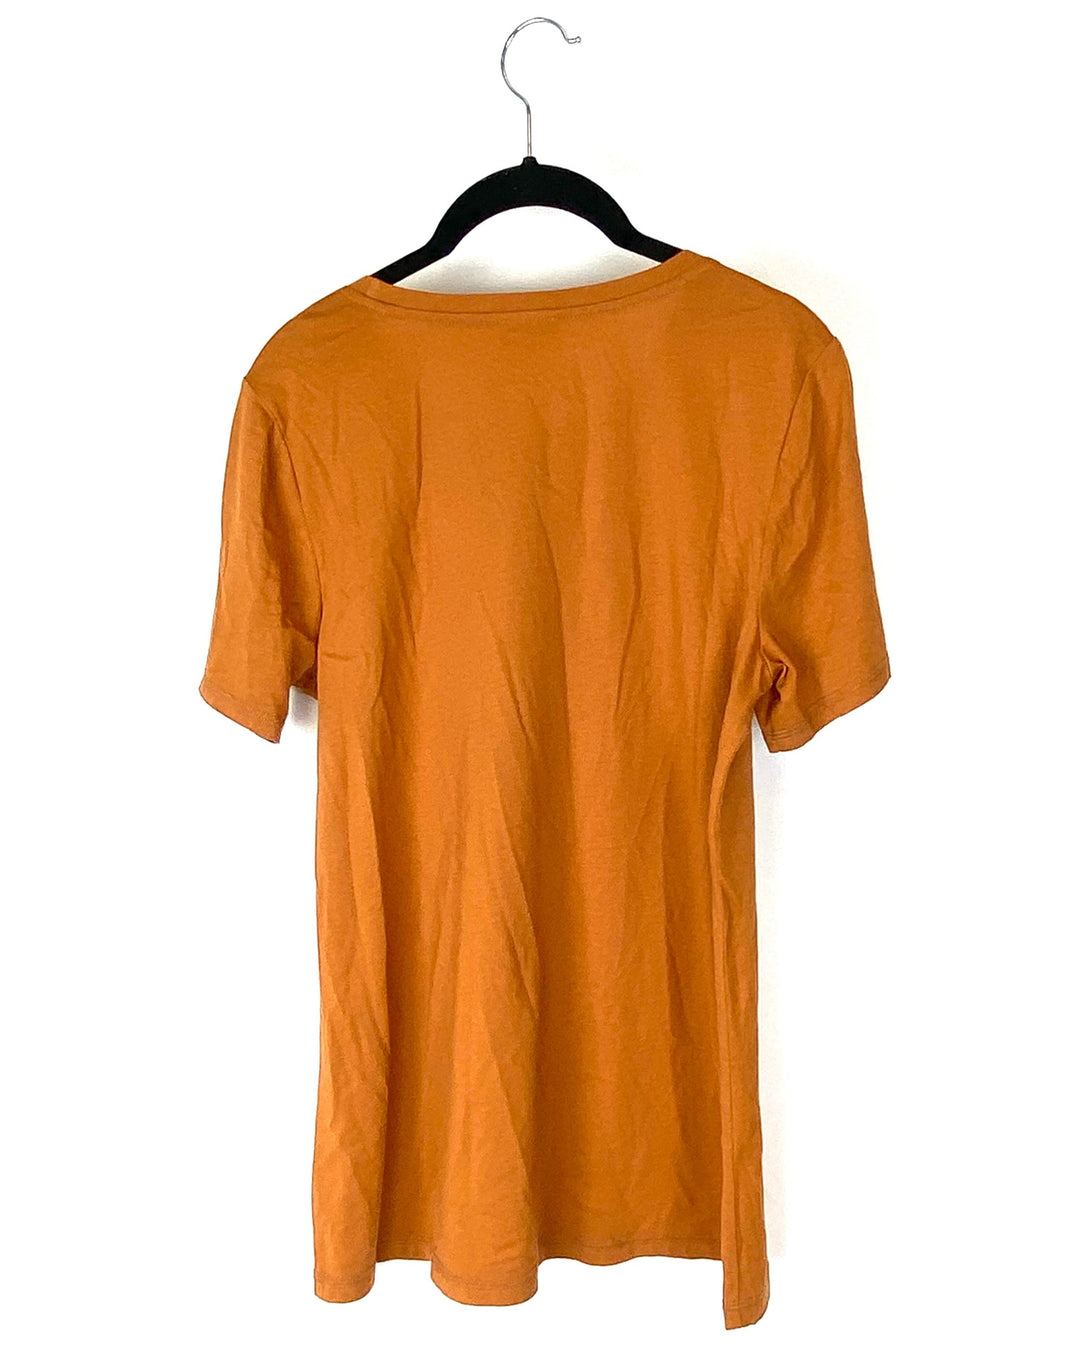 Apricot T-Shirt- Small